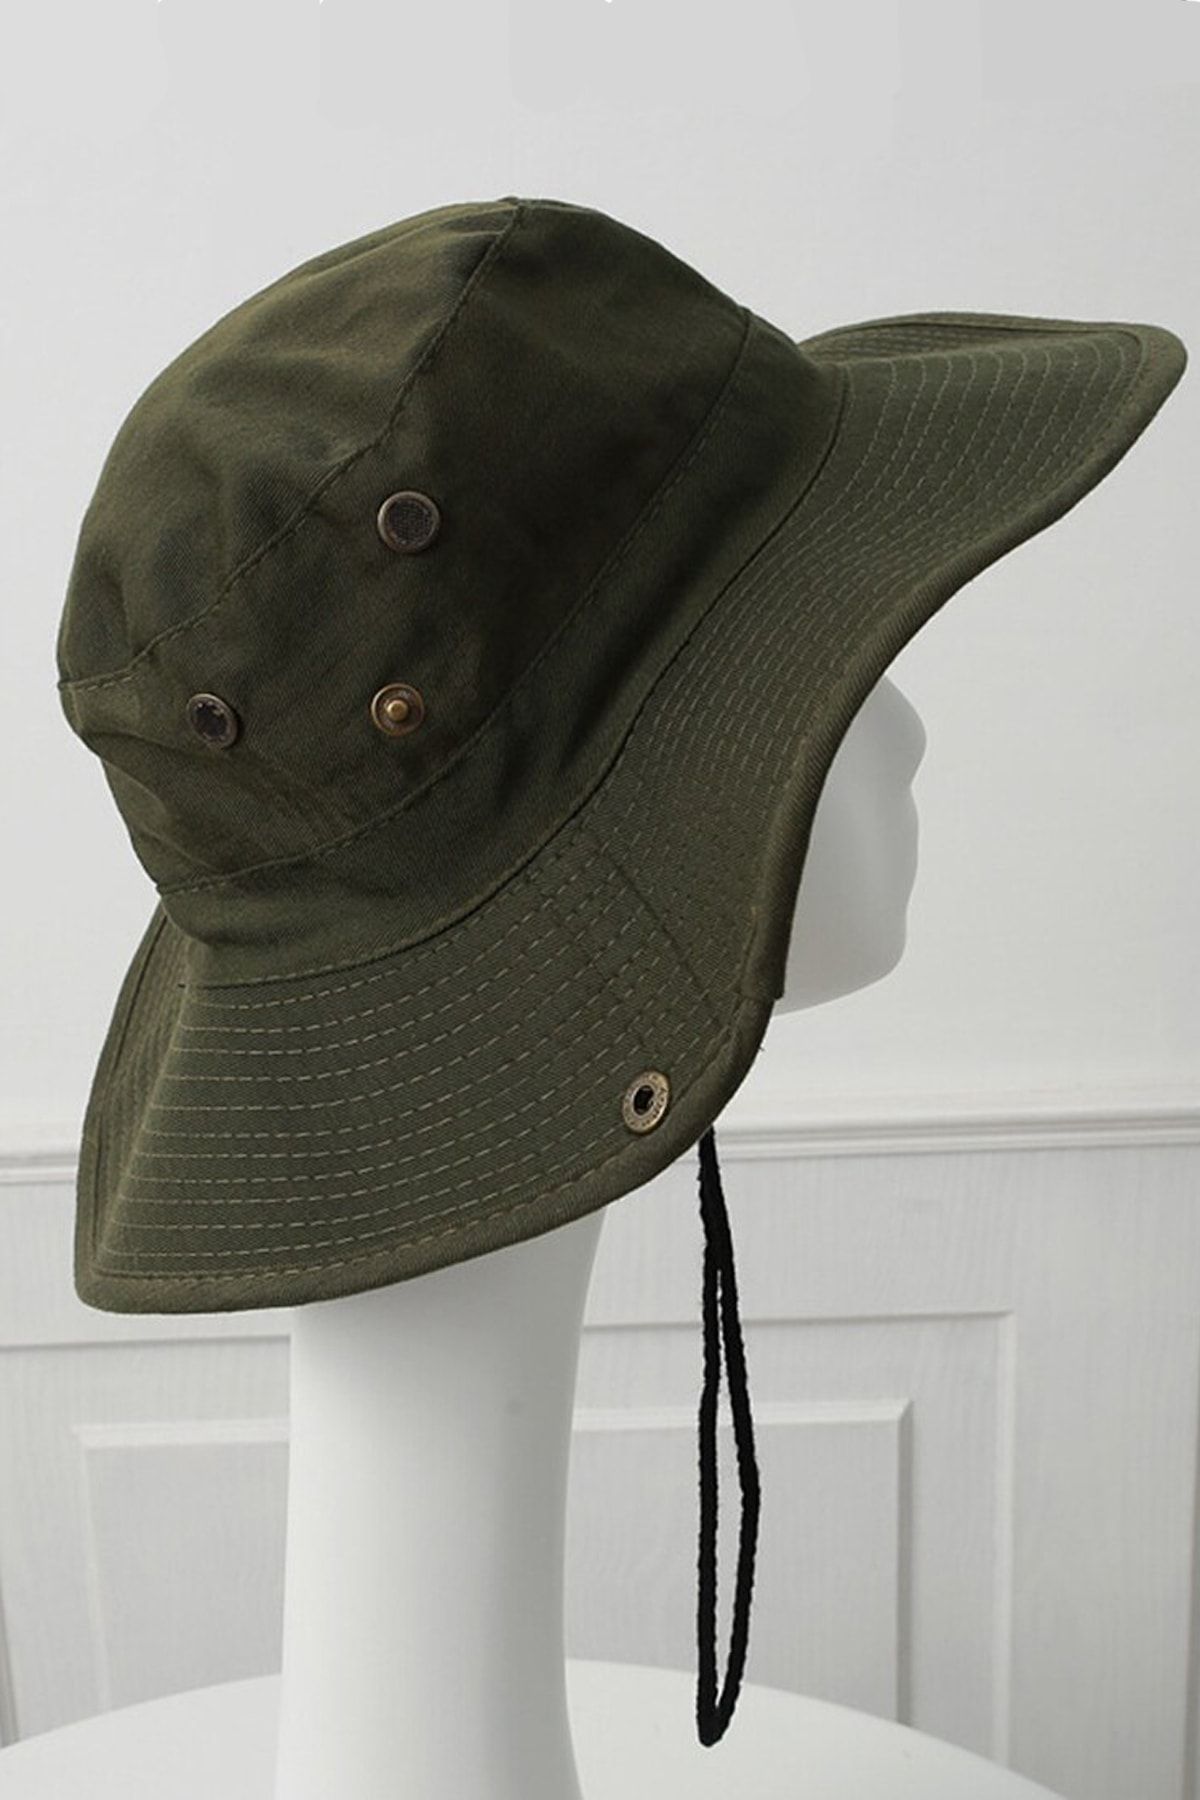 Premium ONLY Yazlık Unisex Safari Kovboy Plaj Şapkası Çıtçıtlı Katlanabilir Pamuklu 56-58 Cm Haki